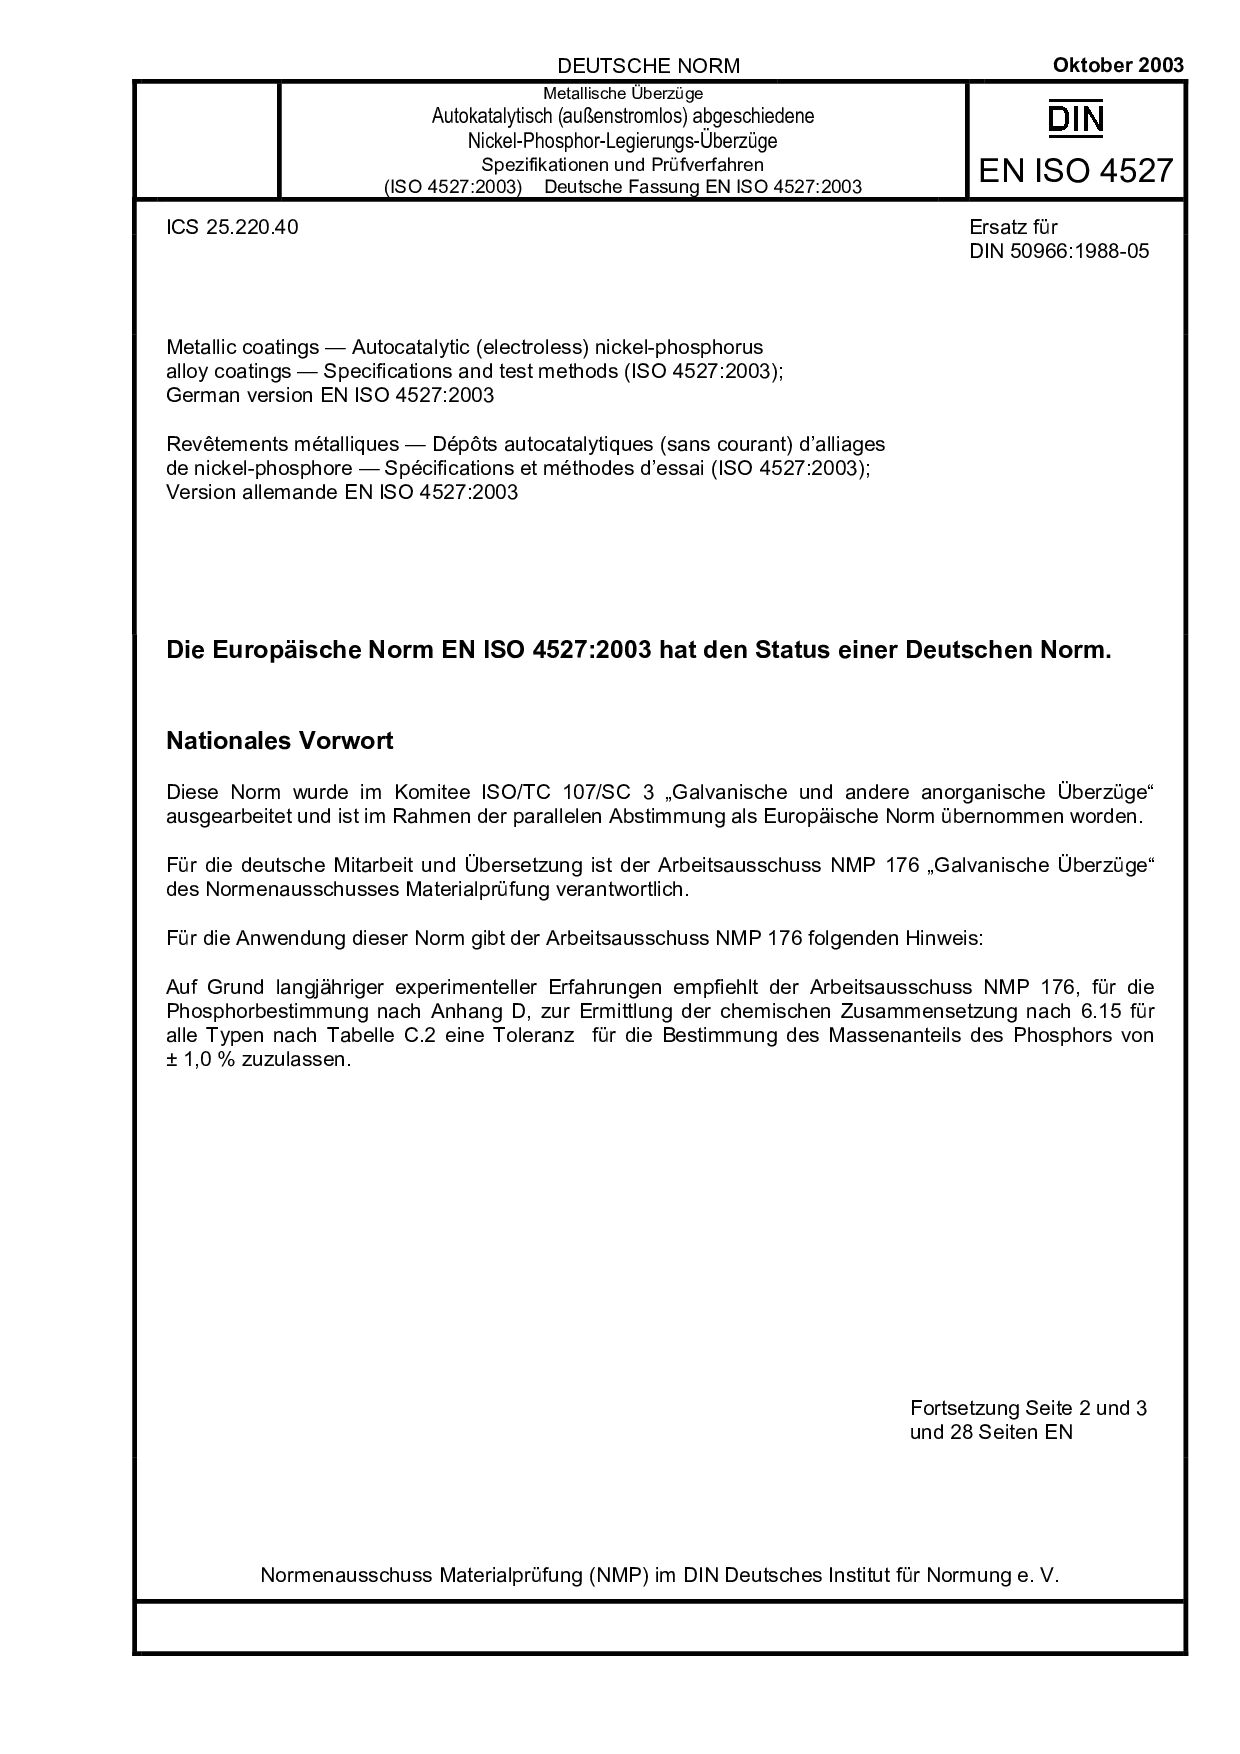 DIN EN ISO 4527:2003